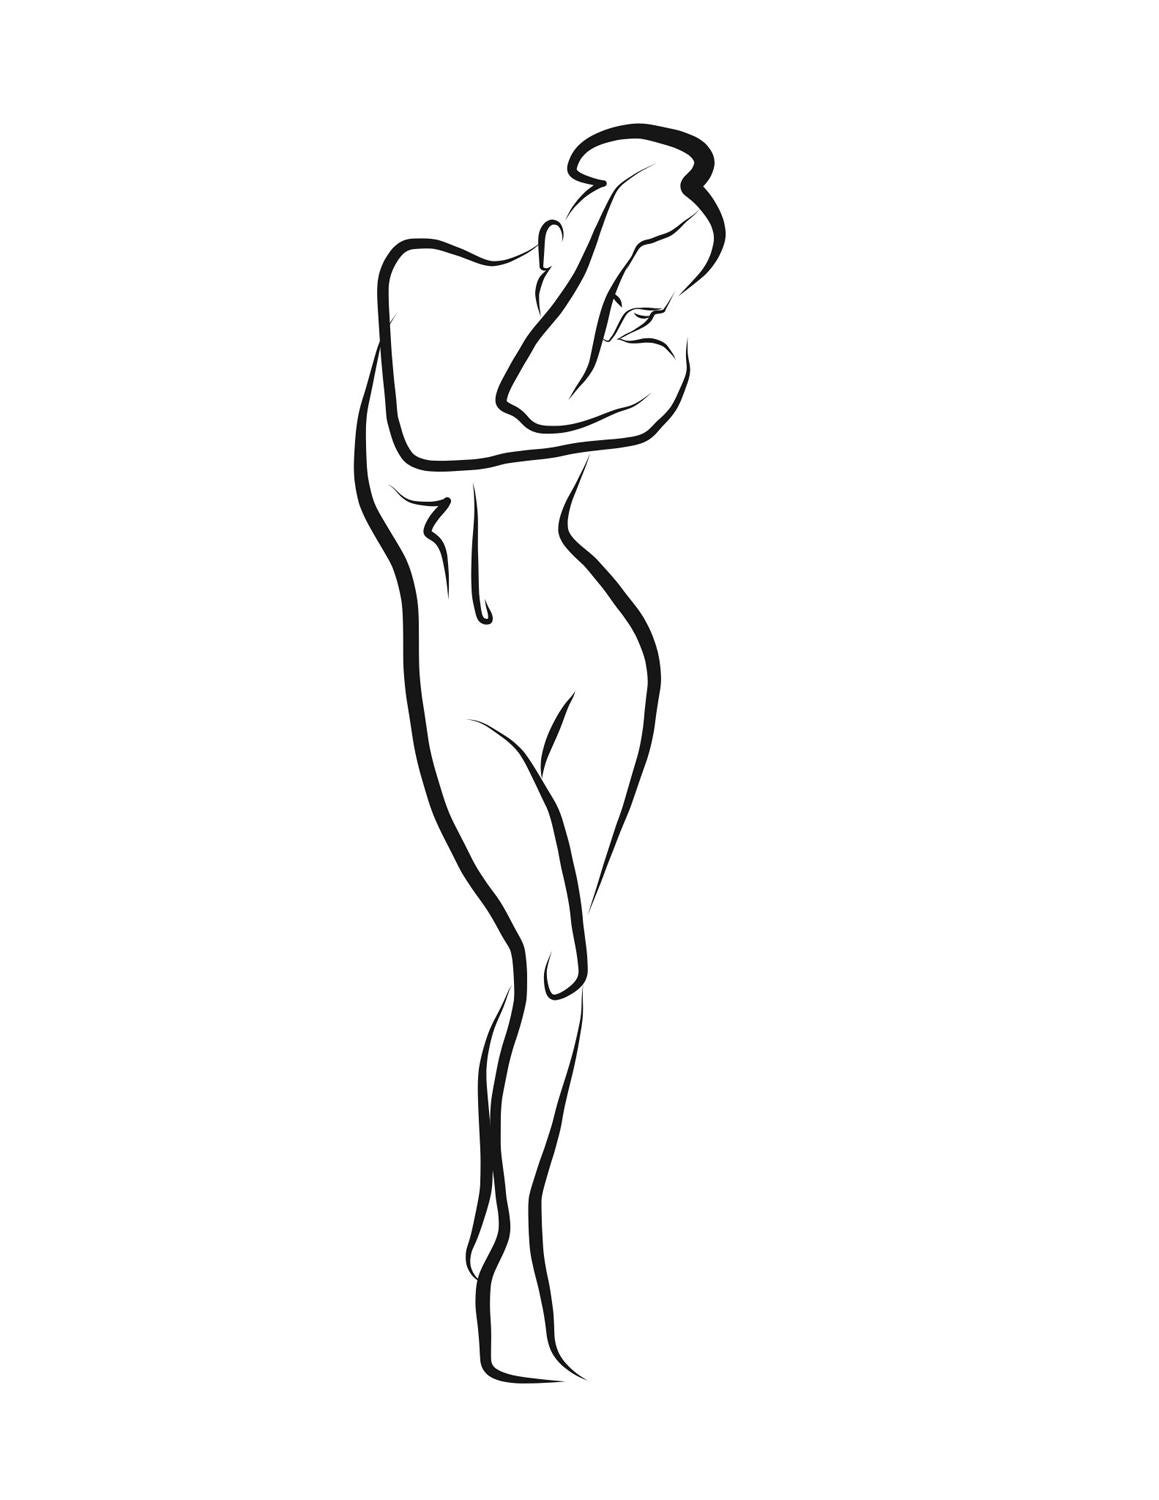 Haiku #26, 1/50 - Digital Vector Drawing Shy Standing Female Nude Woman Figure - Art by Michael Binkley